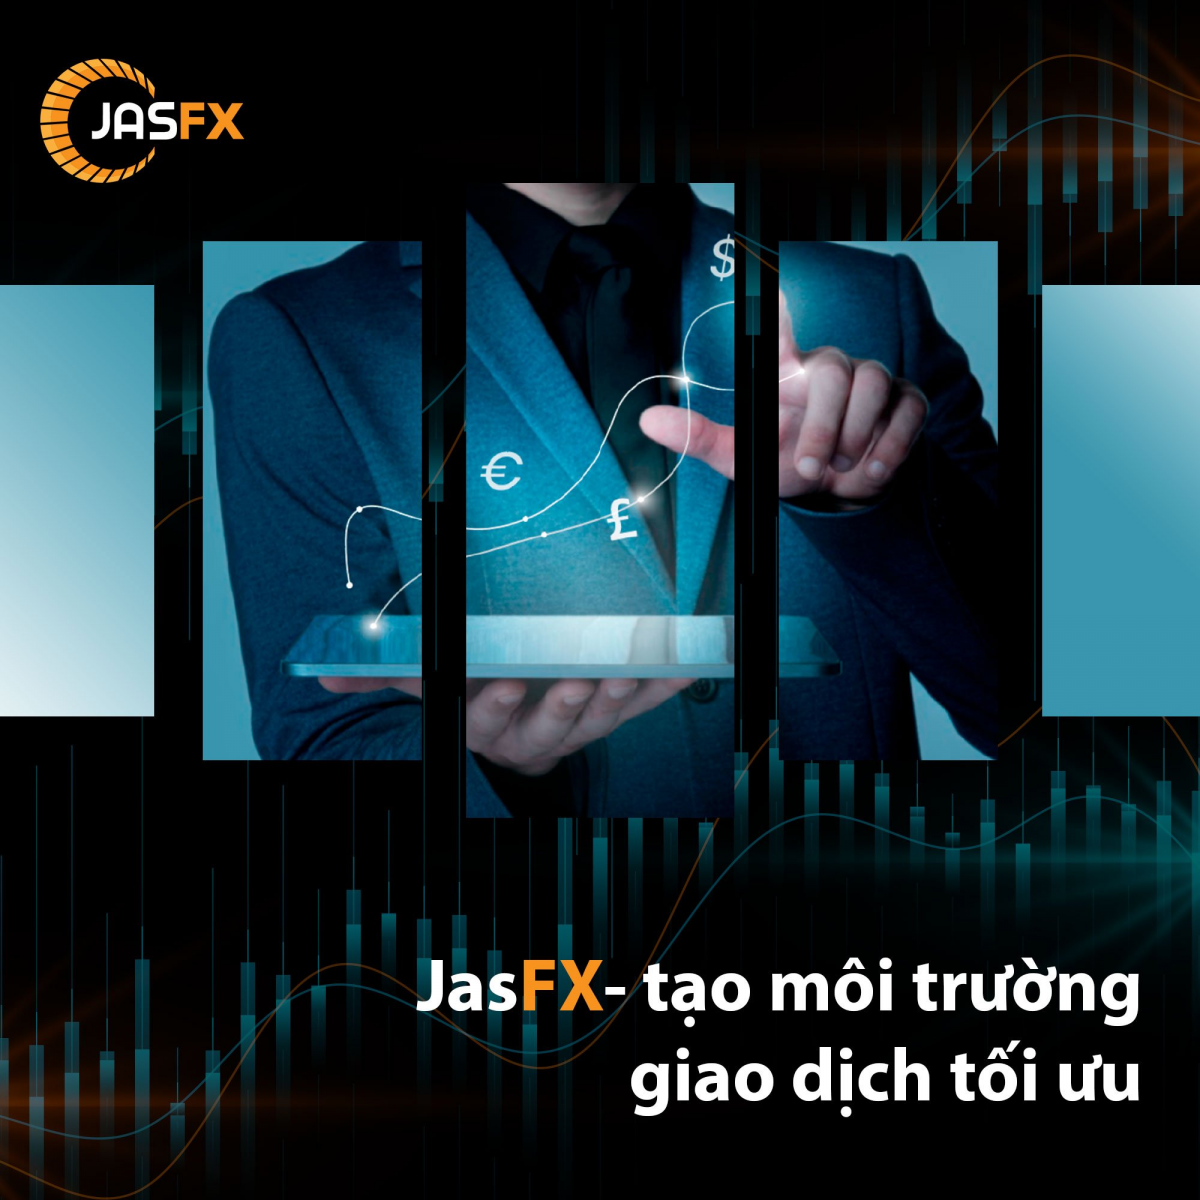 Sàn JasFx có an toàn không? Các thông tin cần biết về sàn JasFx